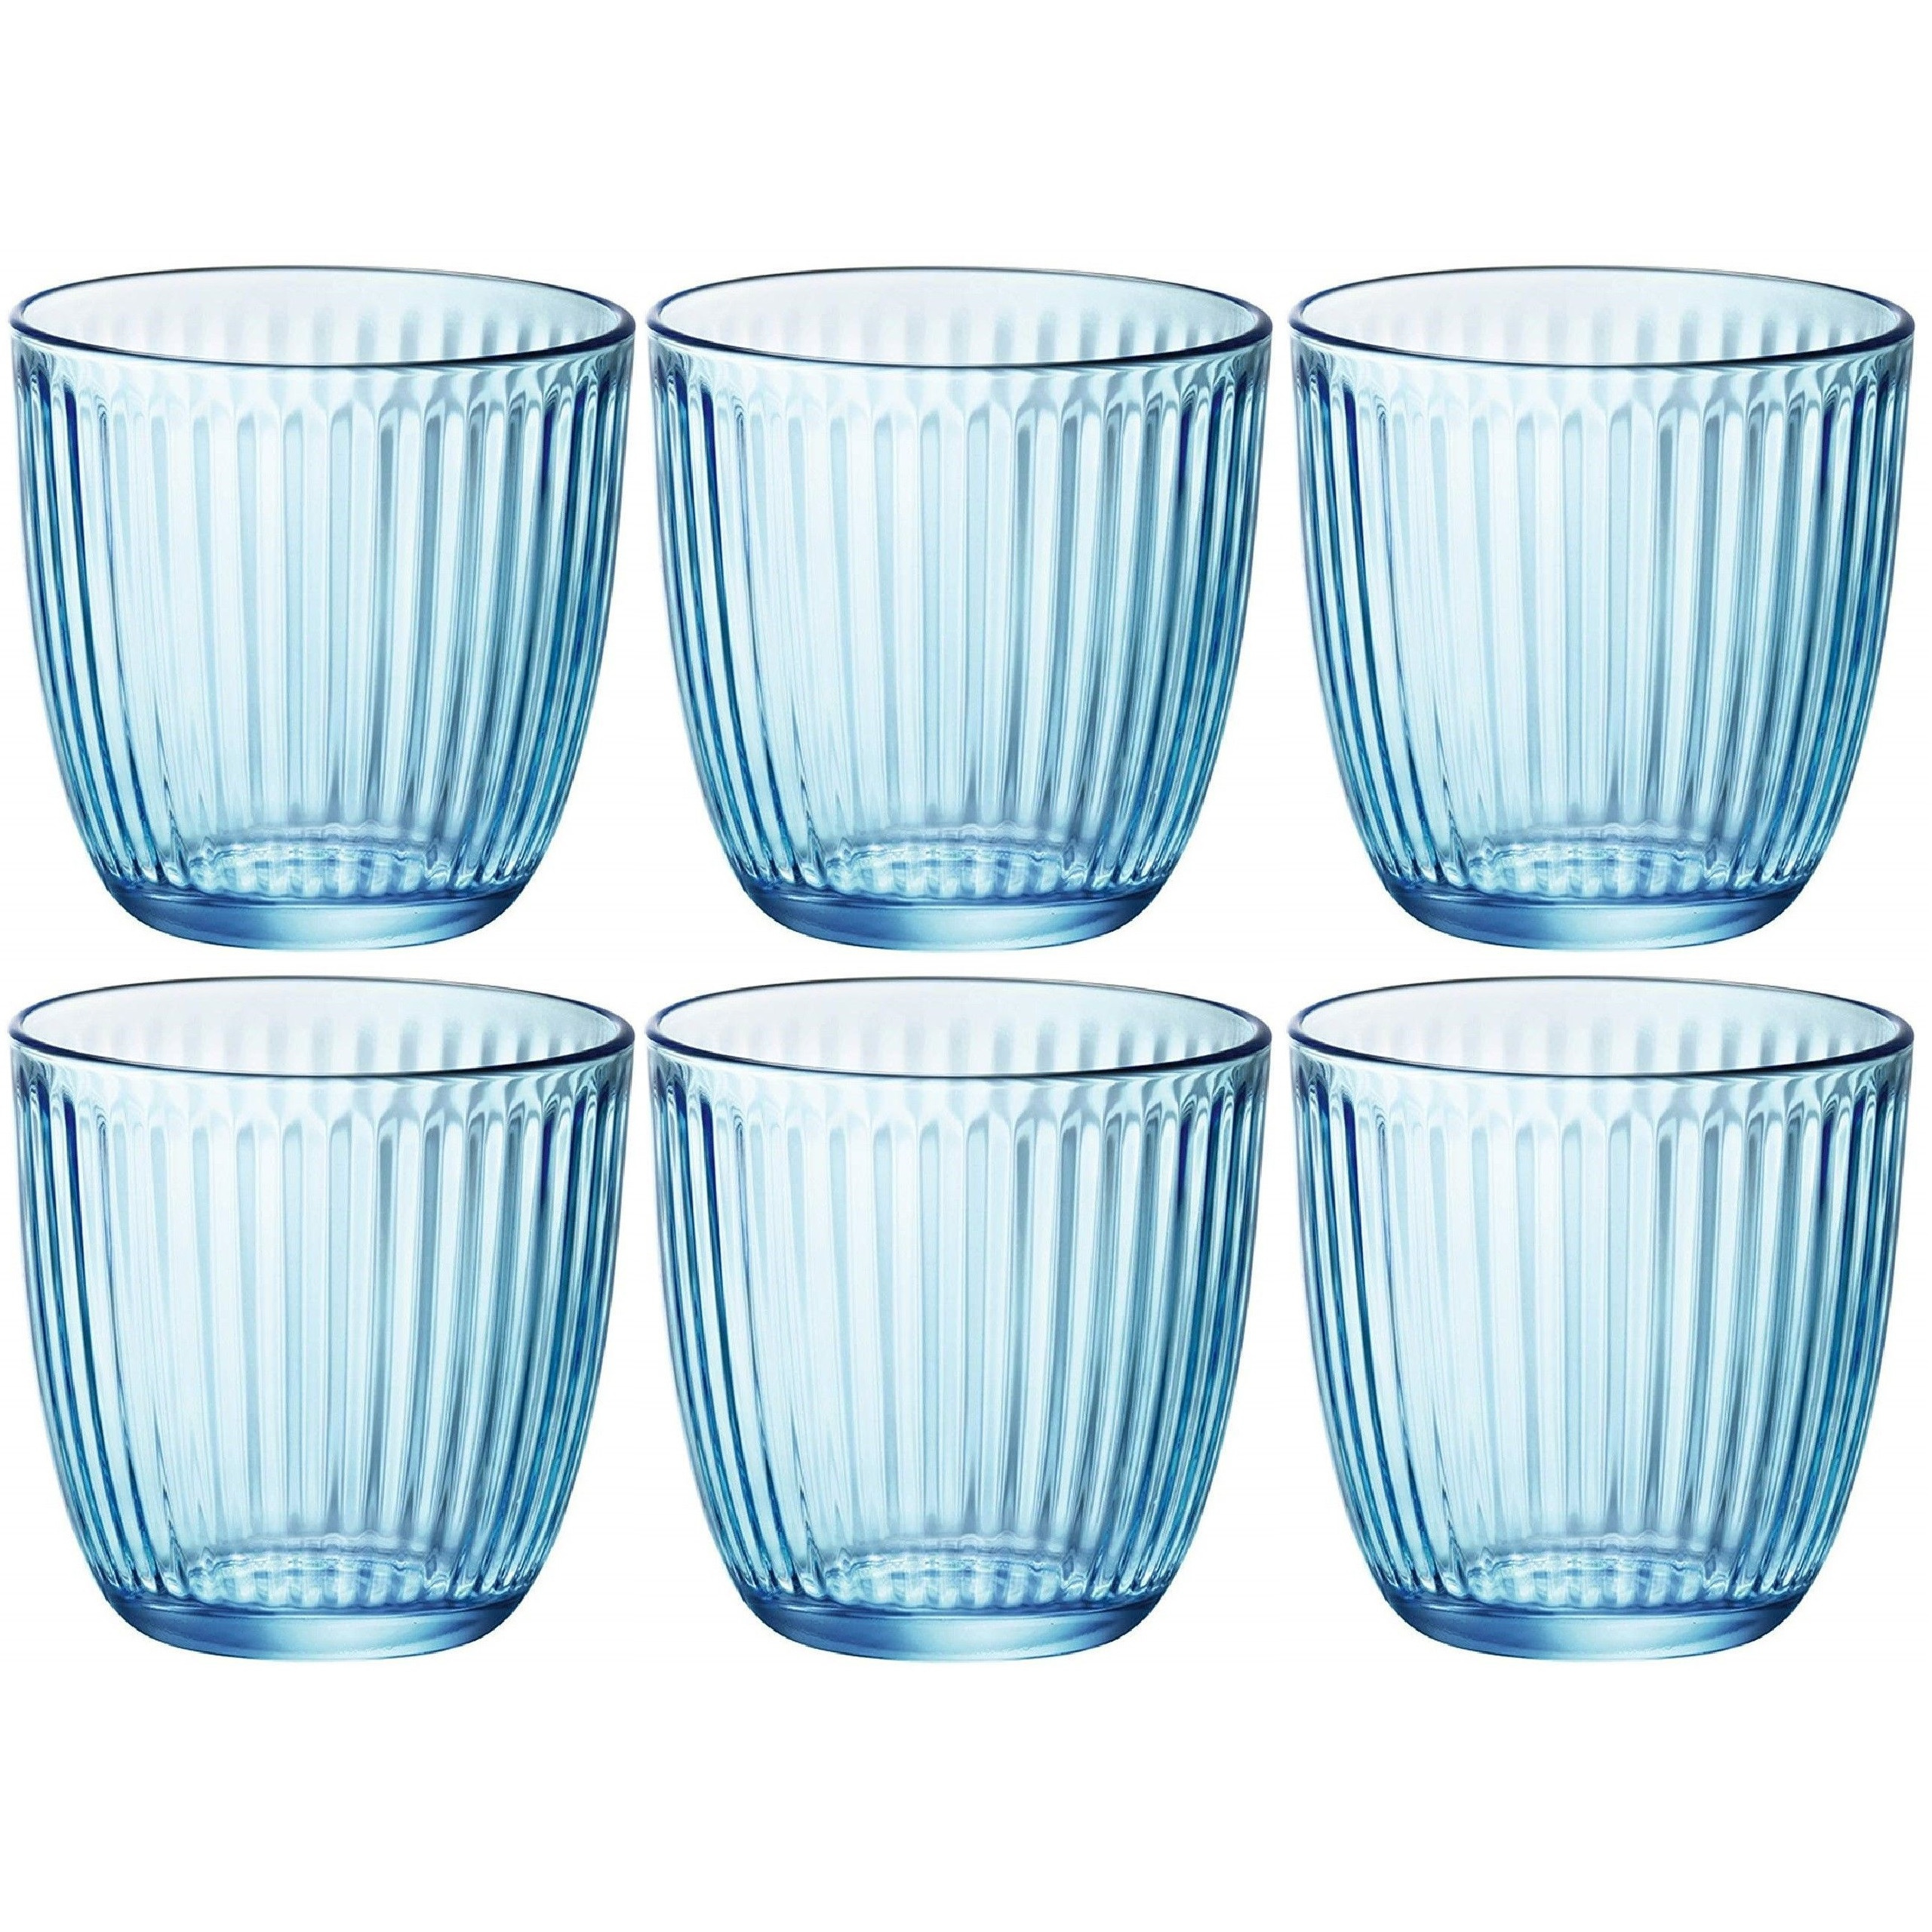 Waterglazen/drinkglazen - 6x - blauw - tumbler glas - 290 ml